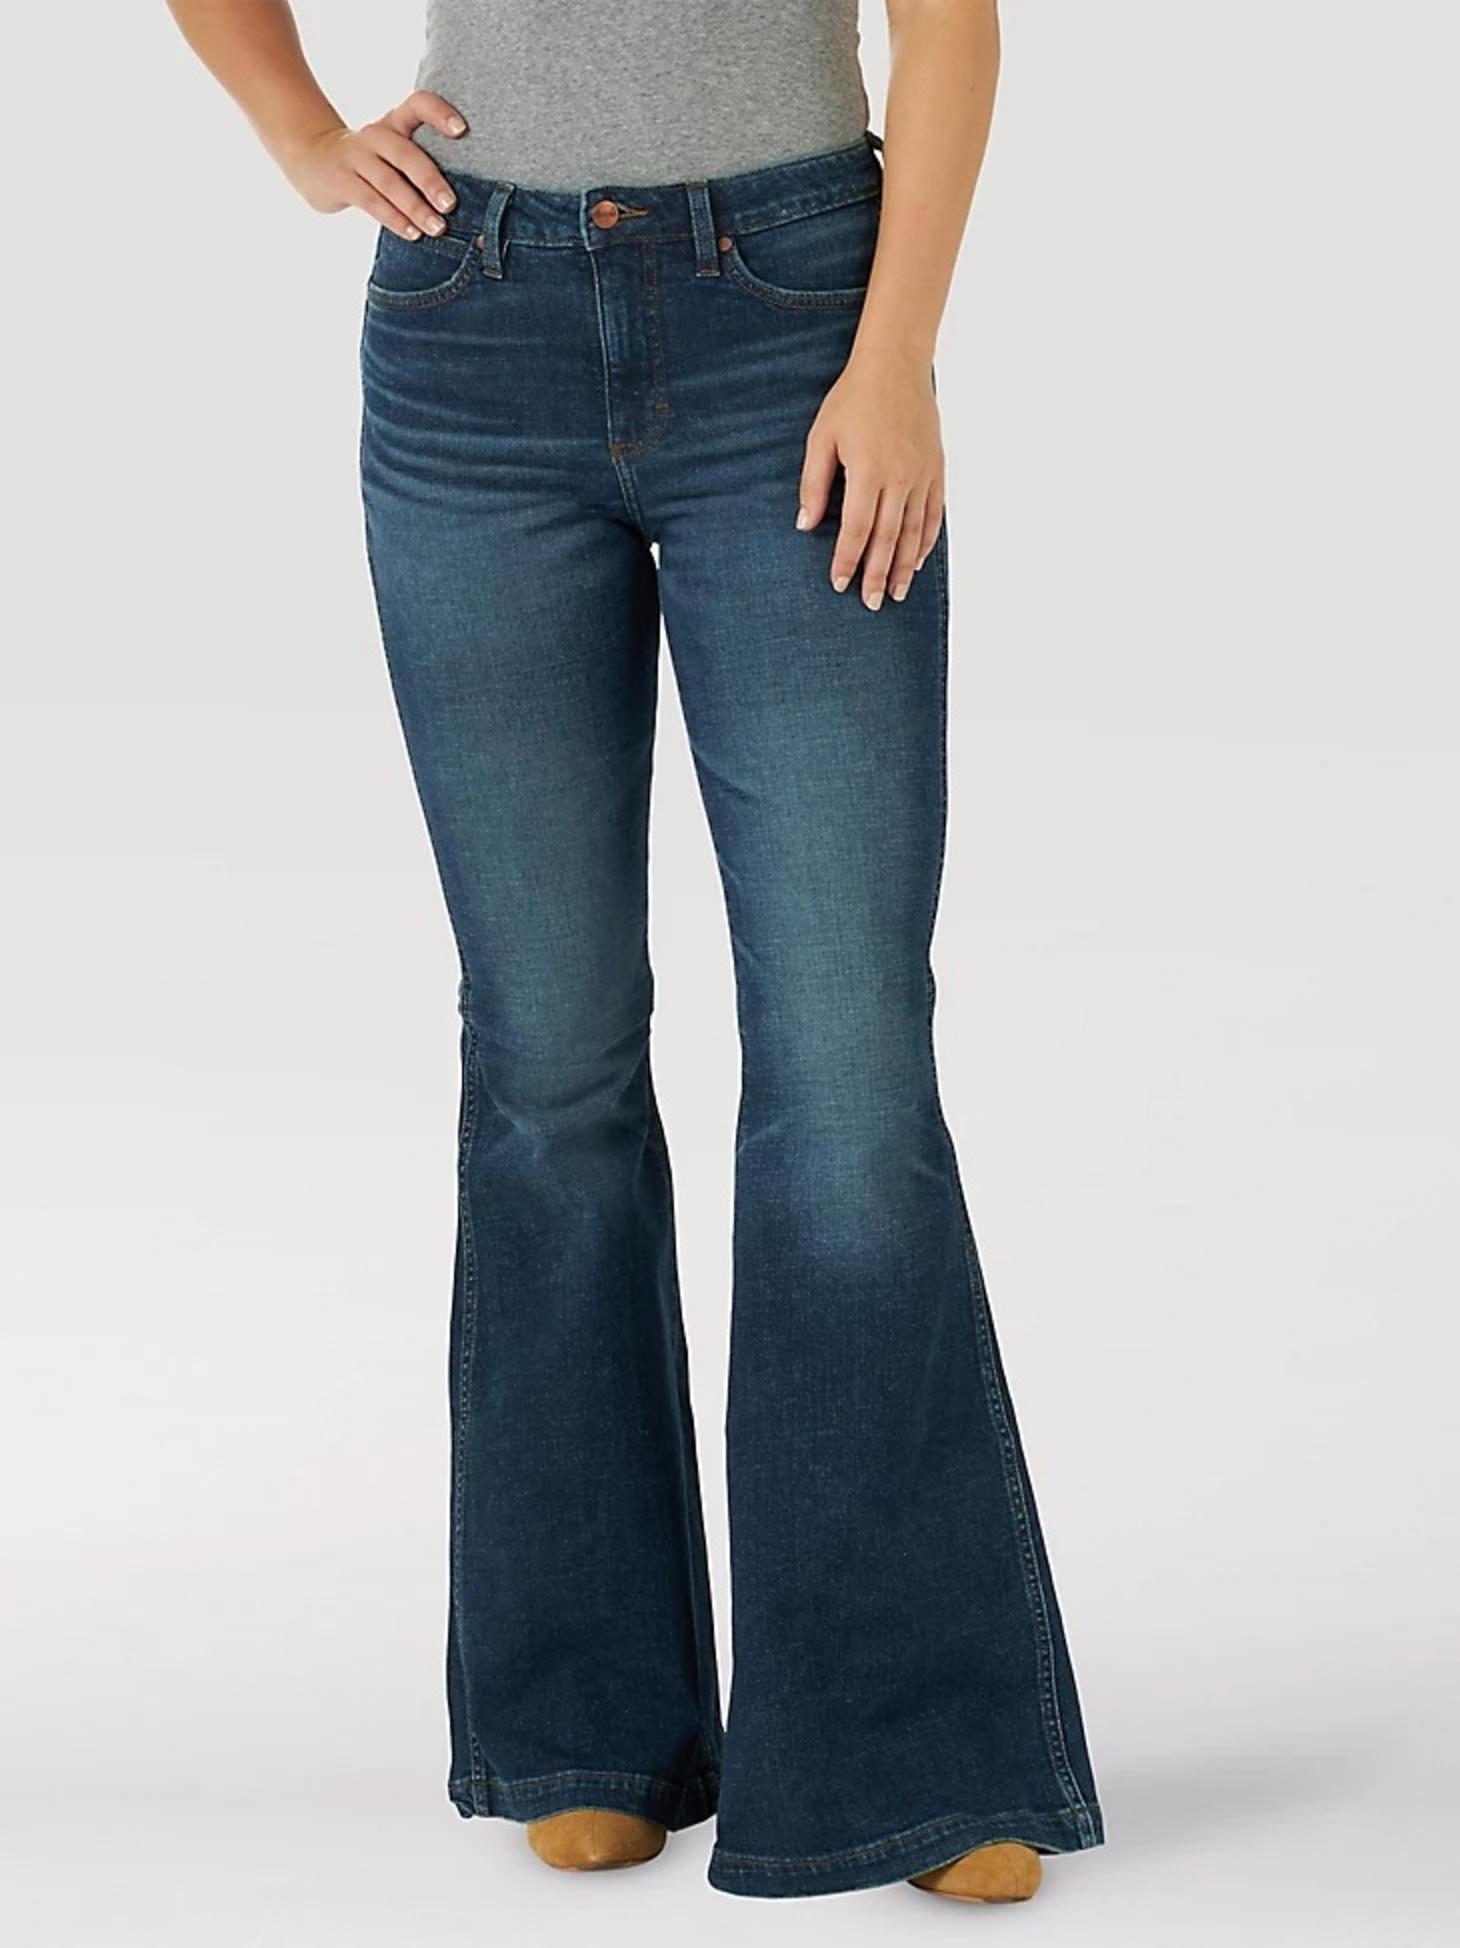 Wrangler Women's Retro High Rise Flare Jeans